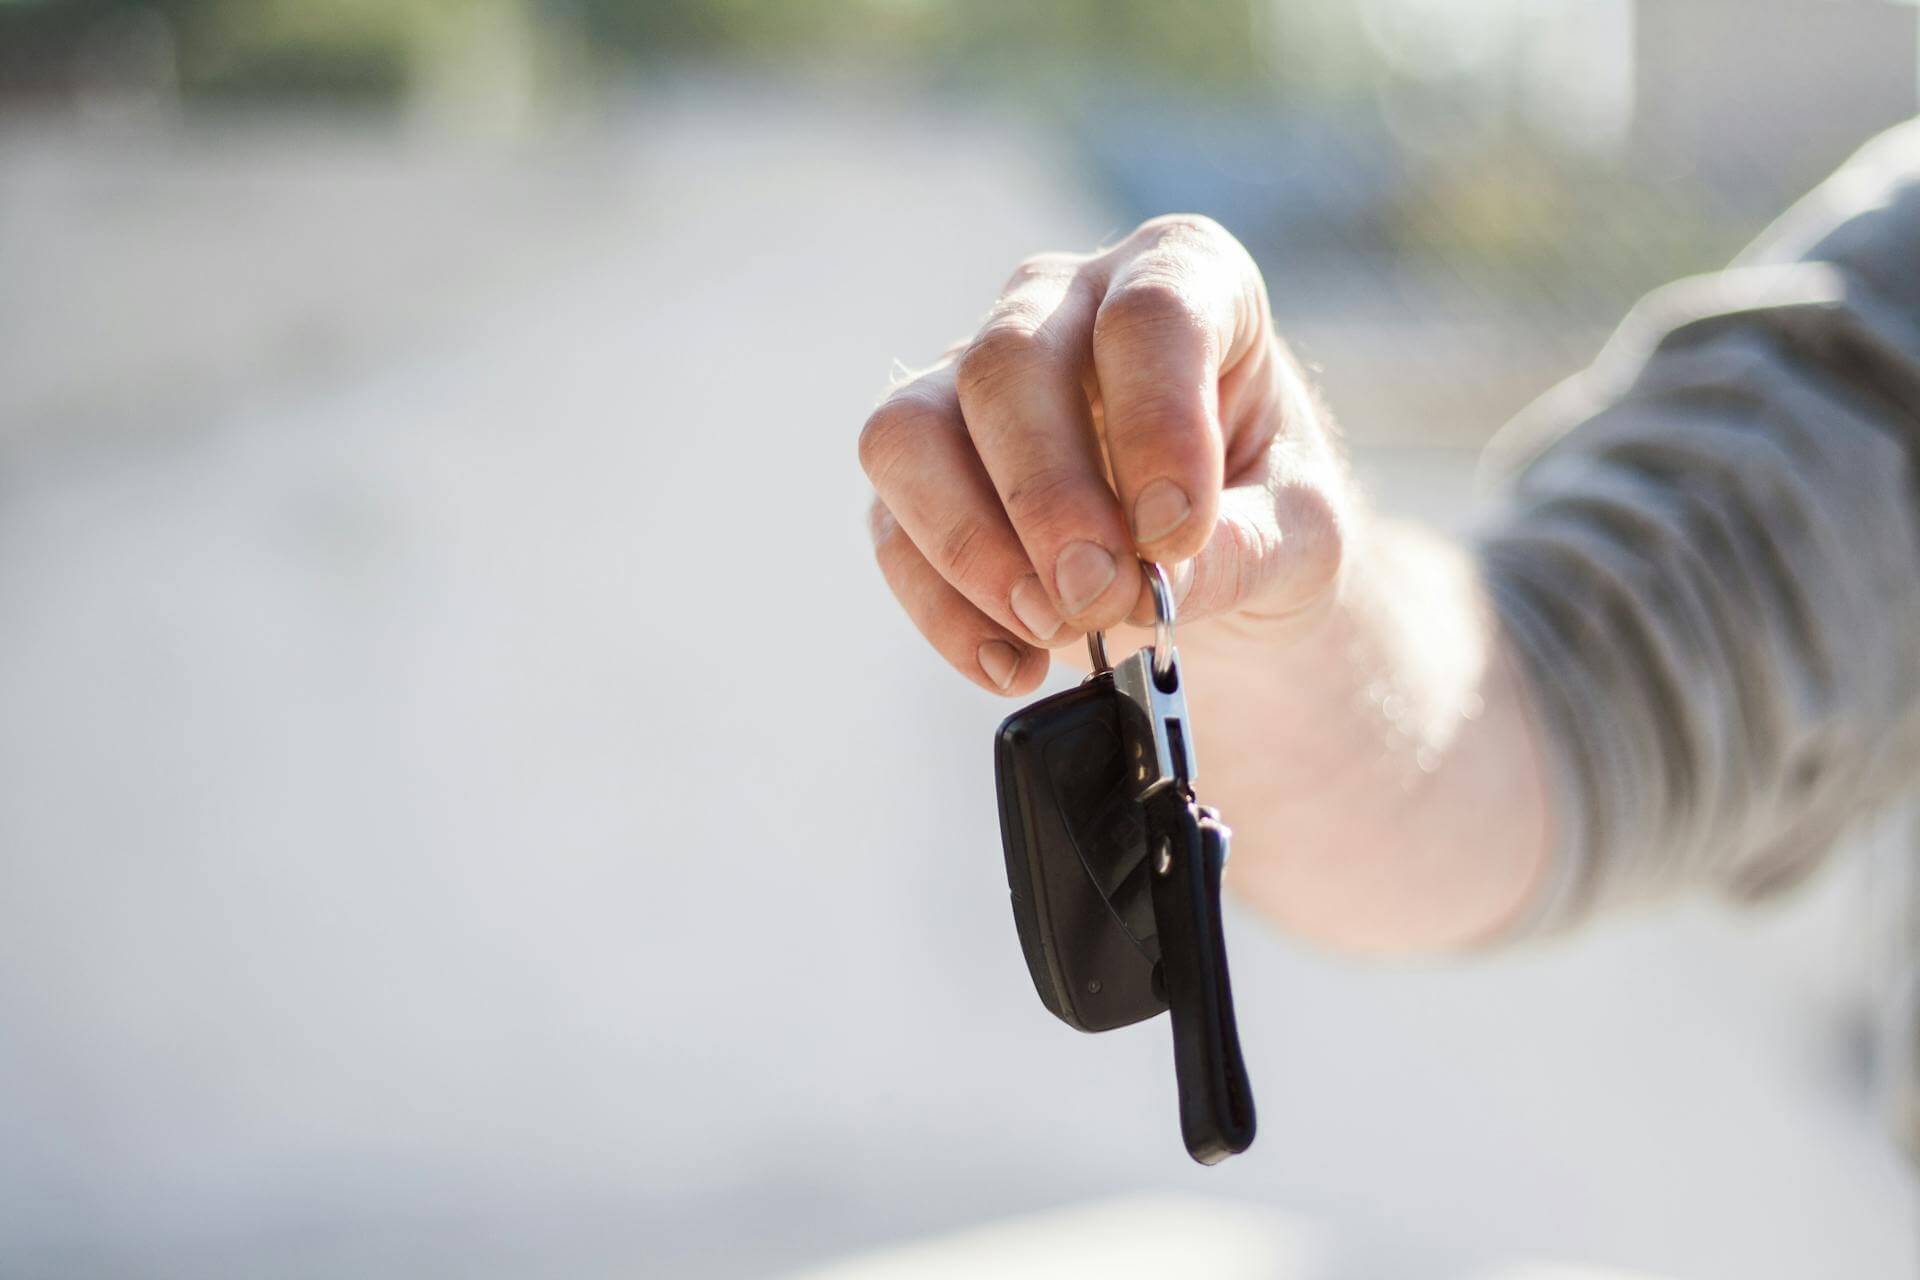 A man holding car keys